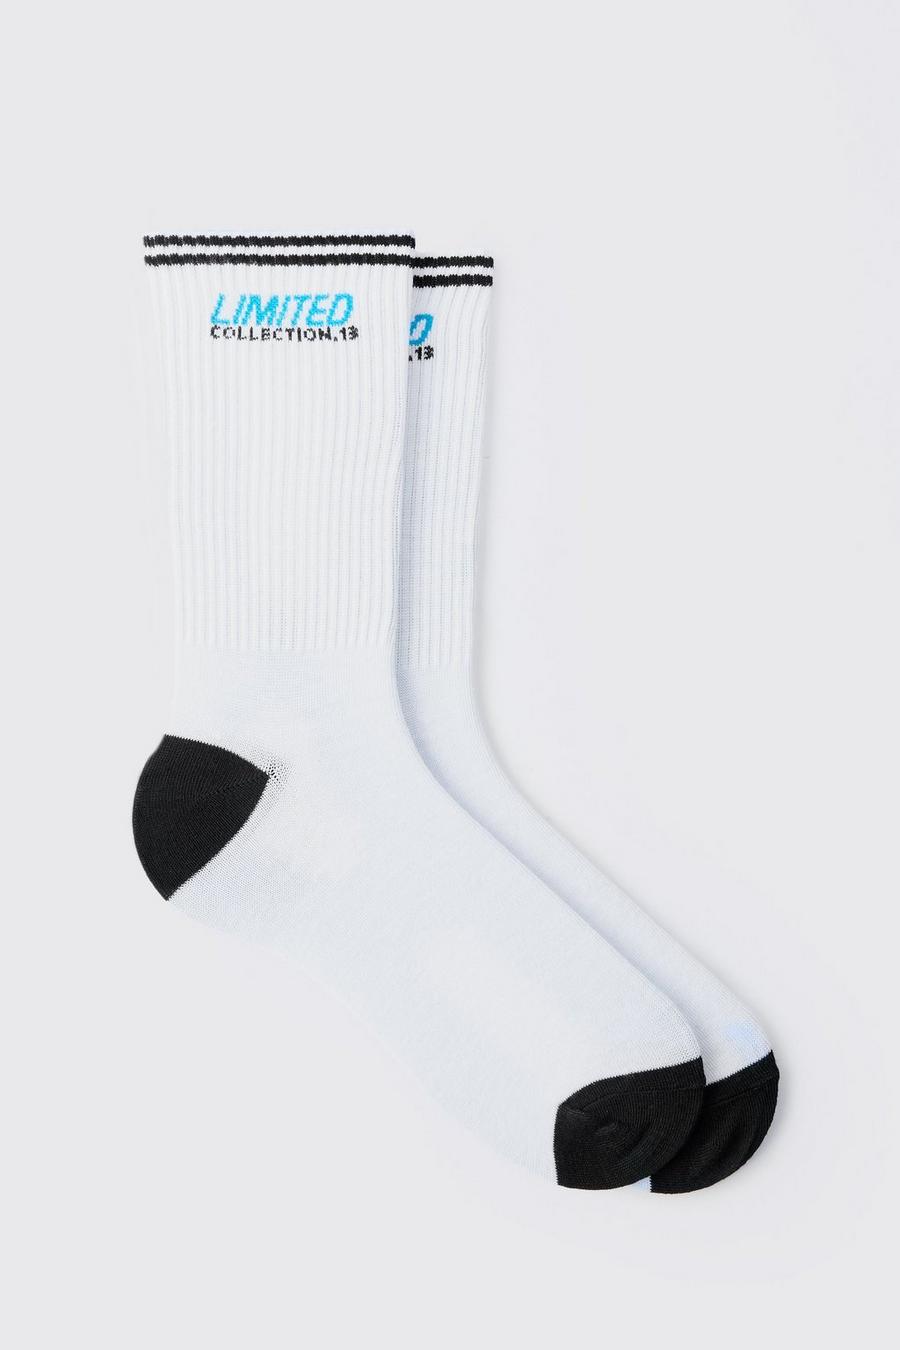 Limited Edition Socken mit Streifen, White